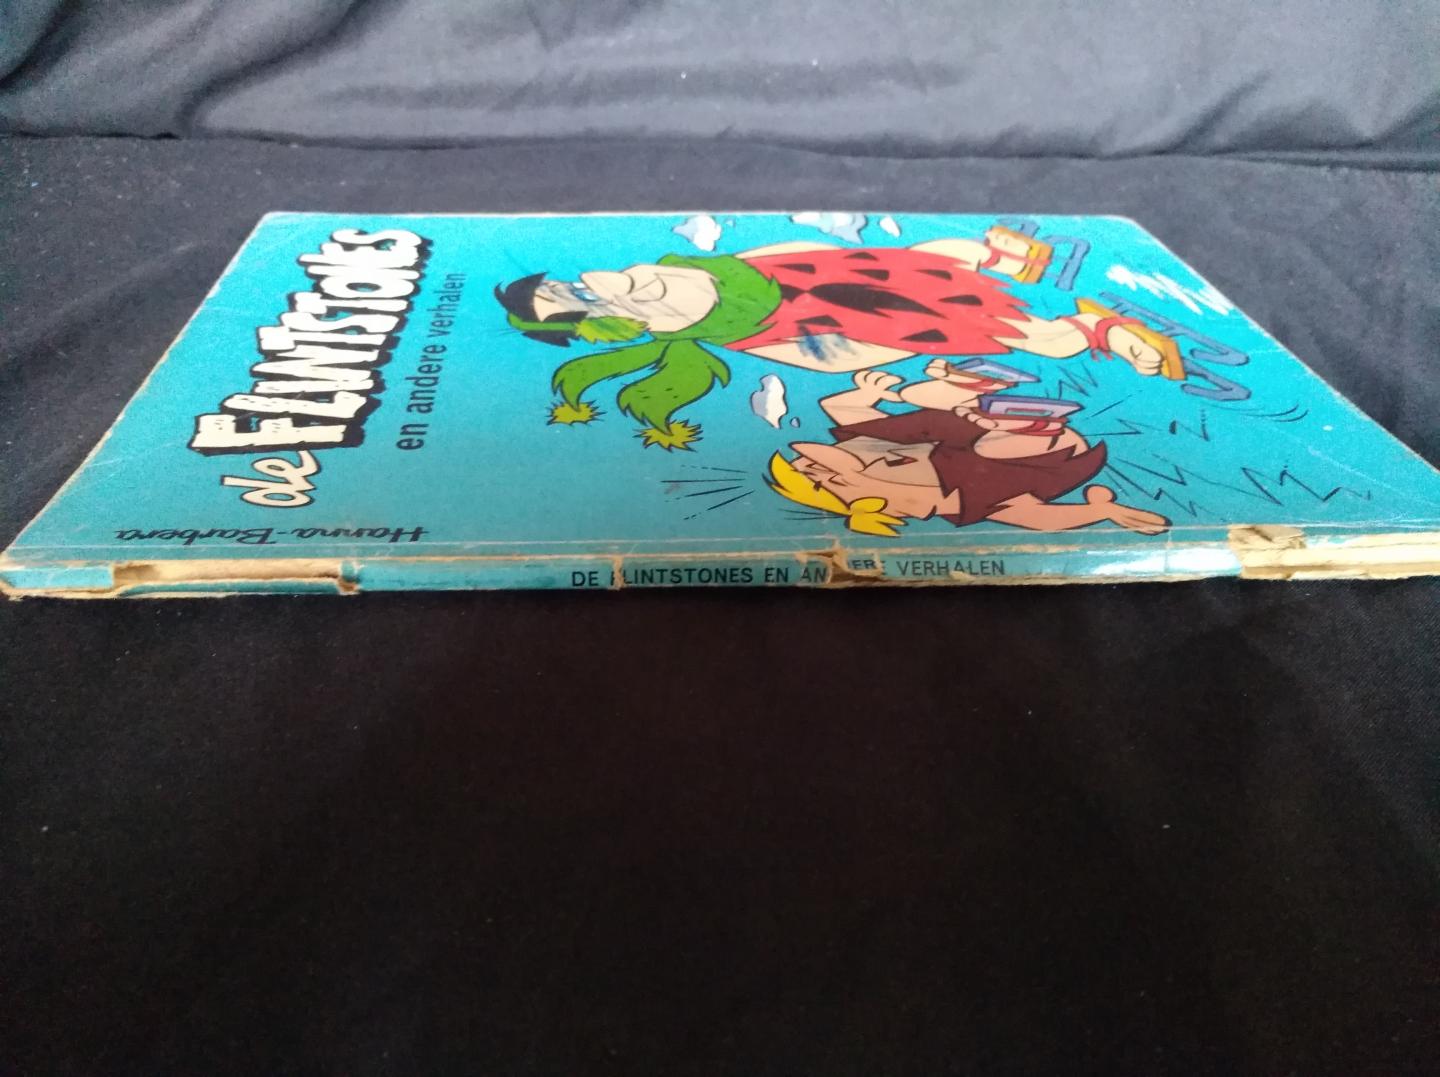 Hanna - Barbera - De flintstones en andere verhalen 1968!